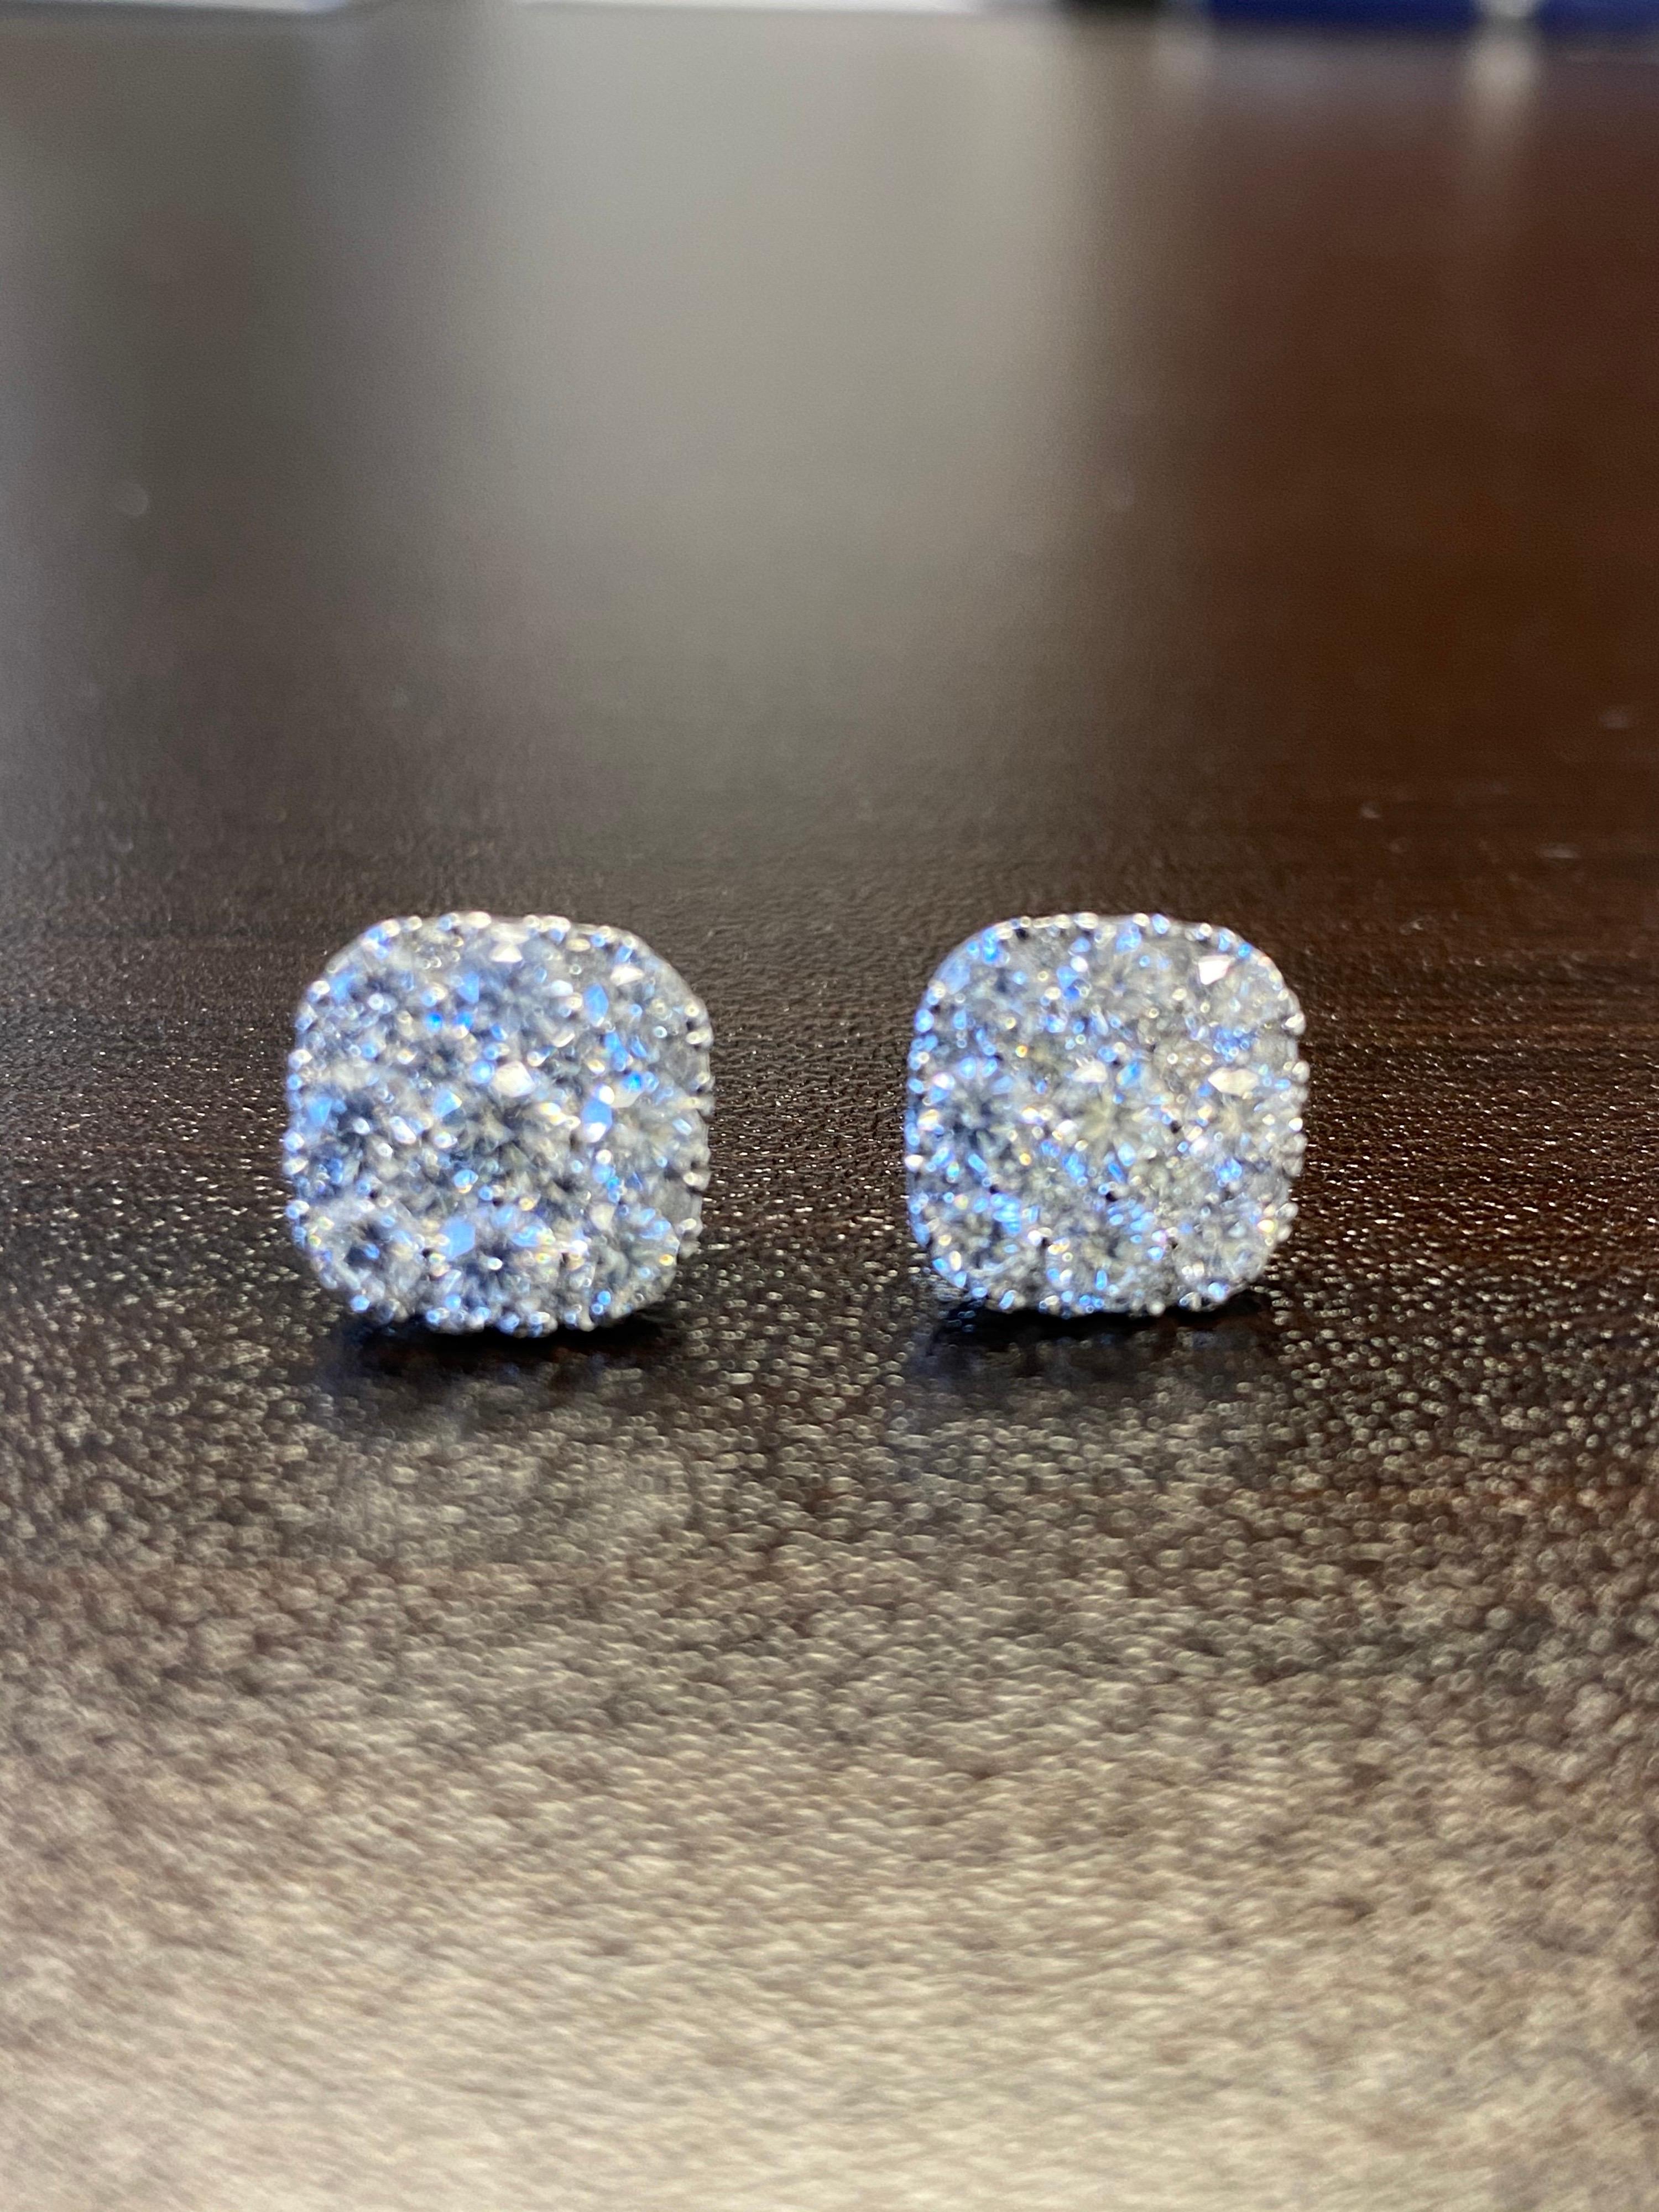 Diamant-Ohrringe aus 18 Karat Weißgold. Die Ohrringe sind mit einer Ansammlung runder Diamanten im Kissenstil besetzt. Das Gesamtgewicht der Diamanten beträgt 2,82 Karat. Die Farbe der Steine ist F, die Reinheit ist VS1.